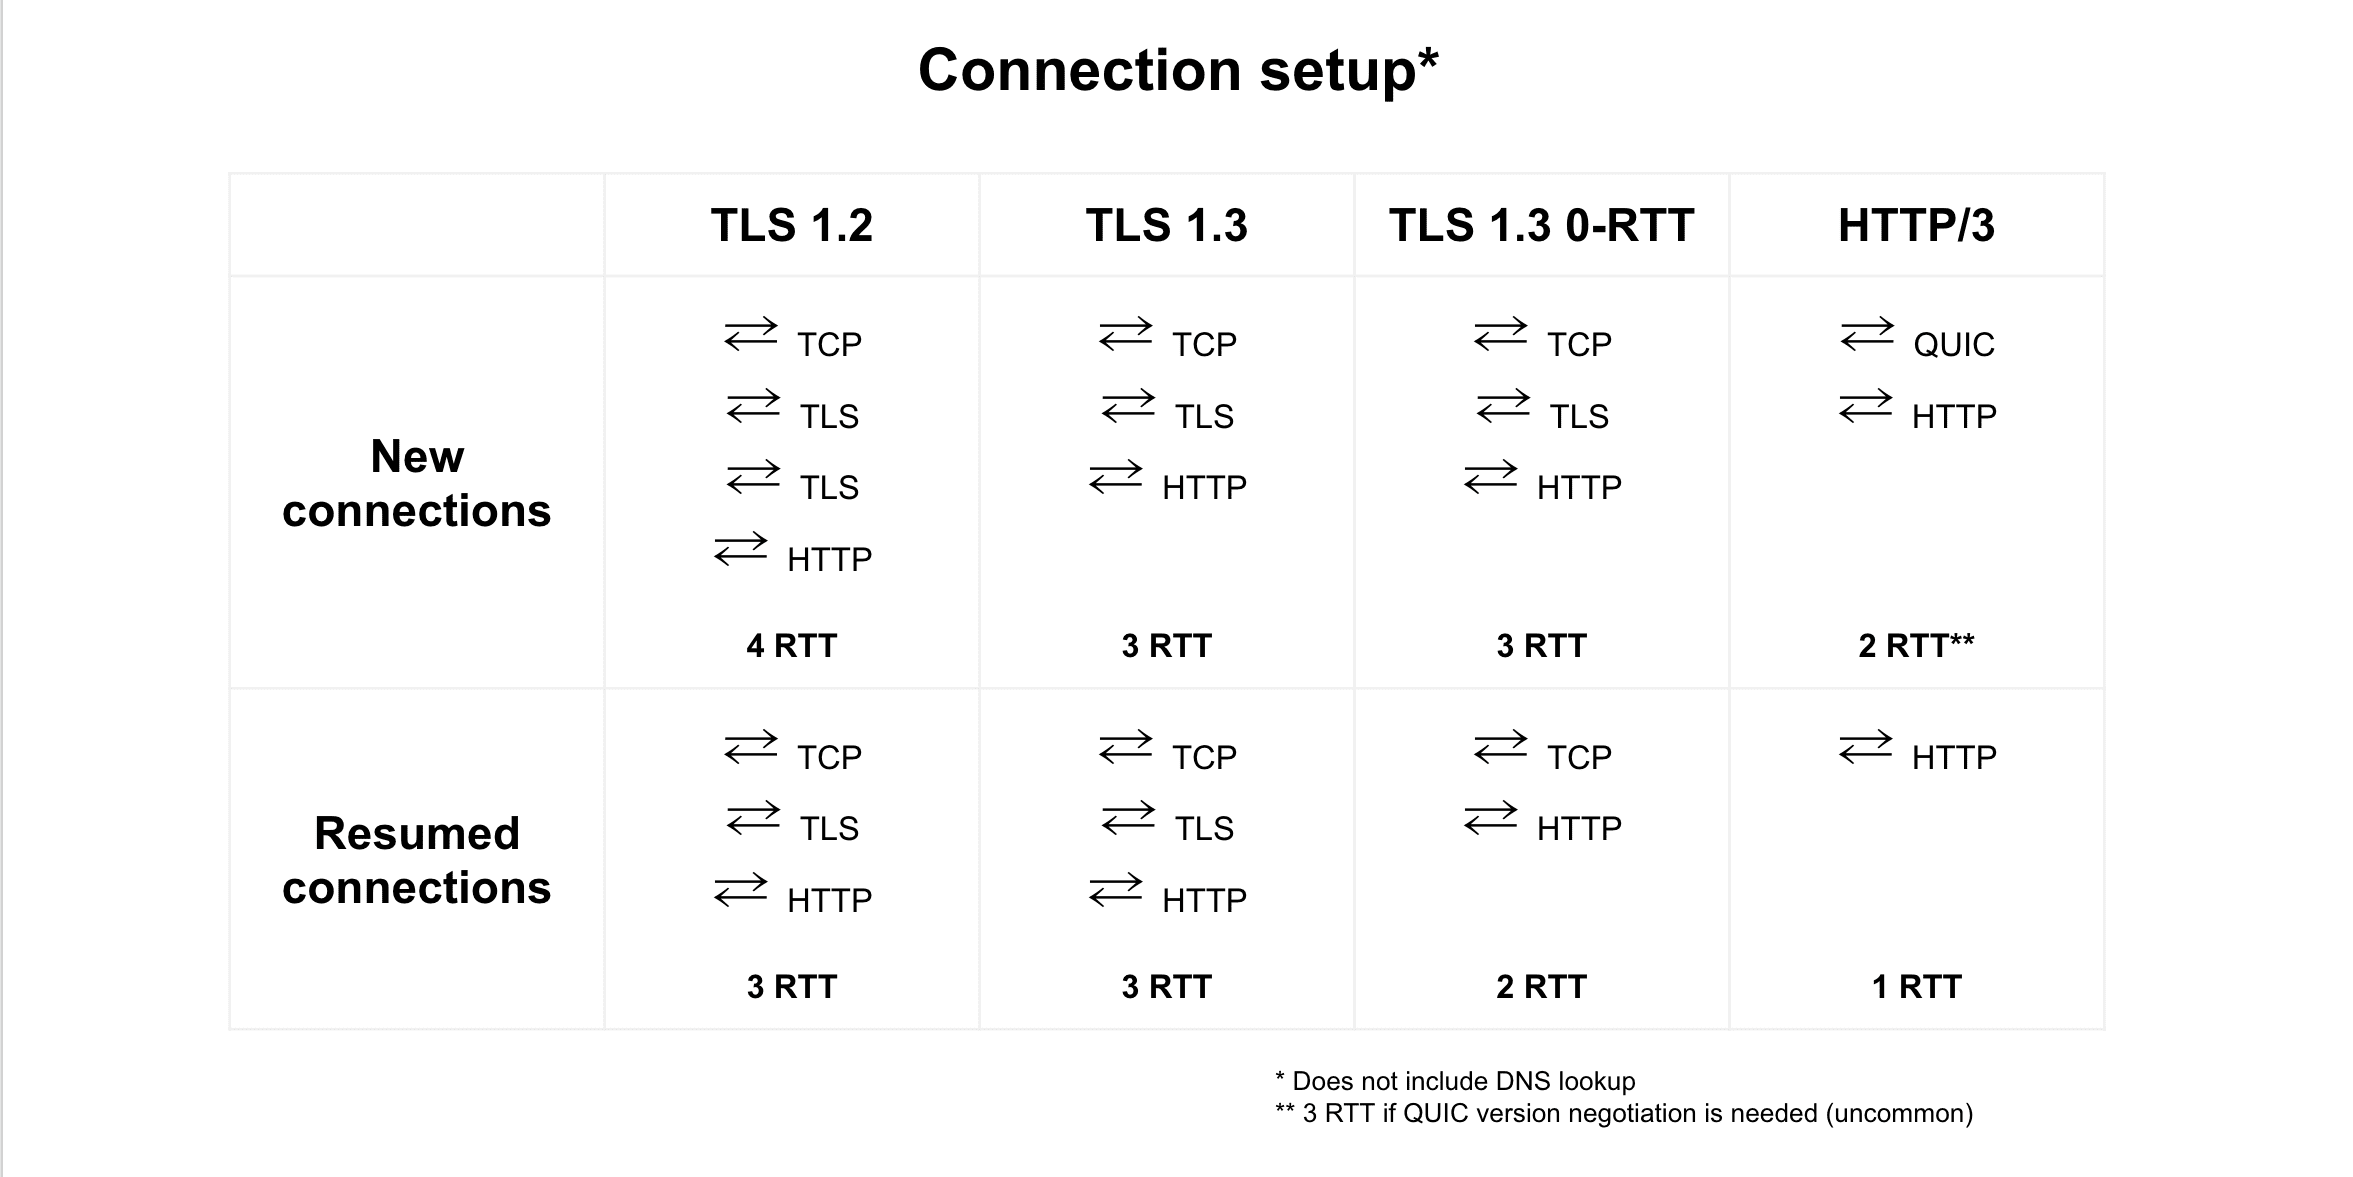 การเปรียบเทียบการกลับมาเชื่อมต่อระหว่าง TLS 1.2, TLS 1.3, TLS 1.3 0-RTT และ HTTP/3